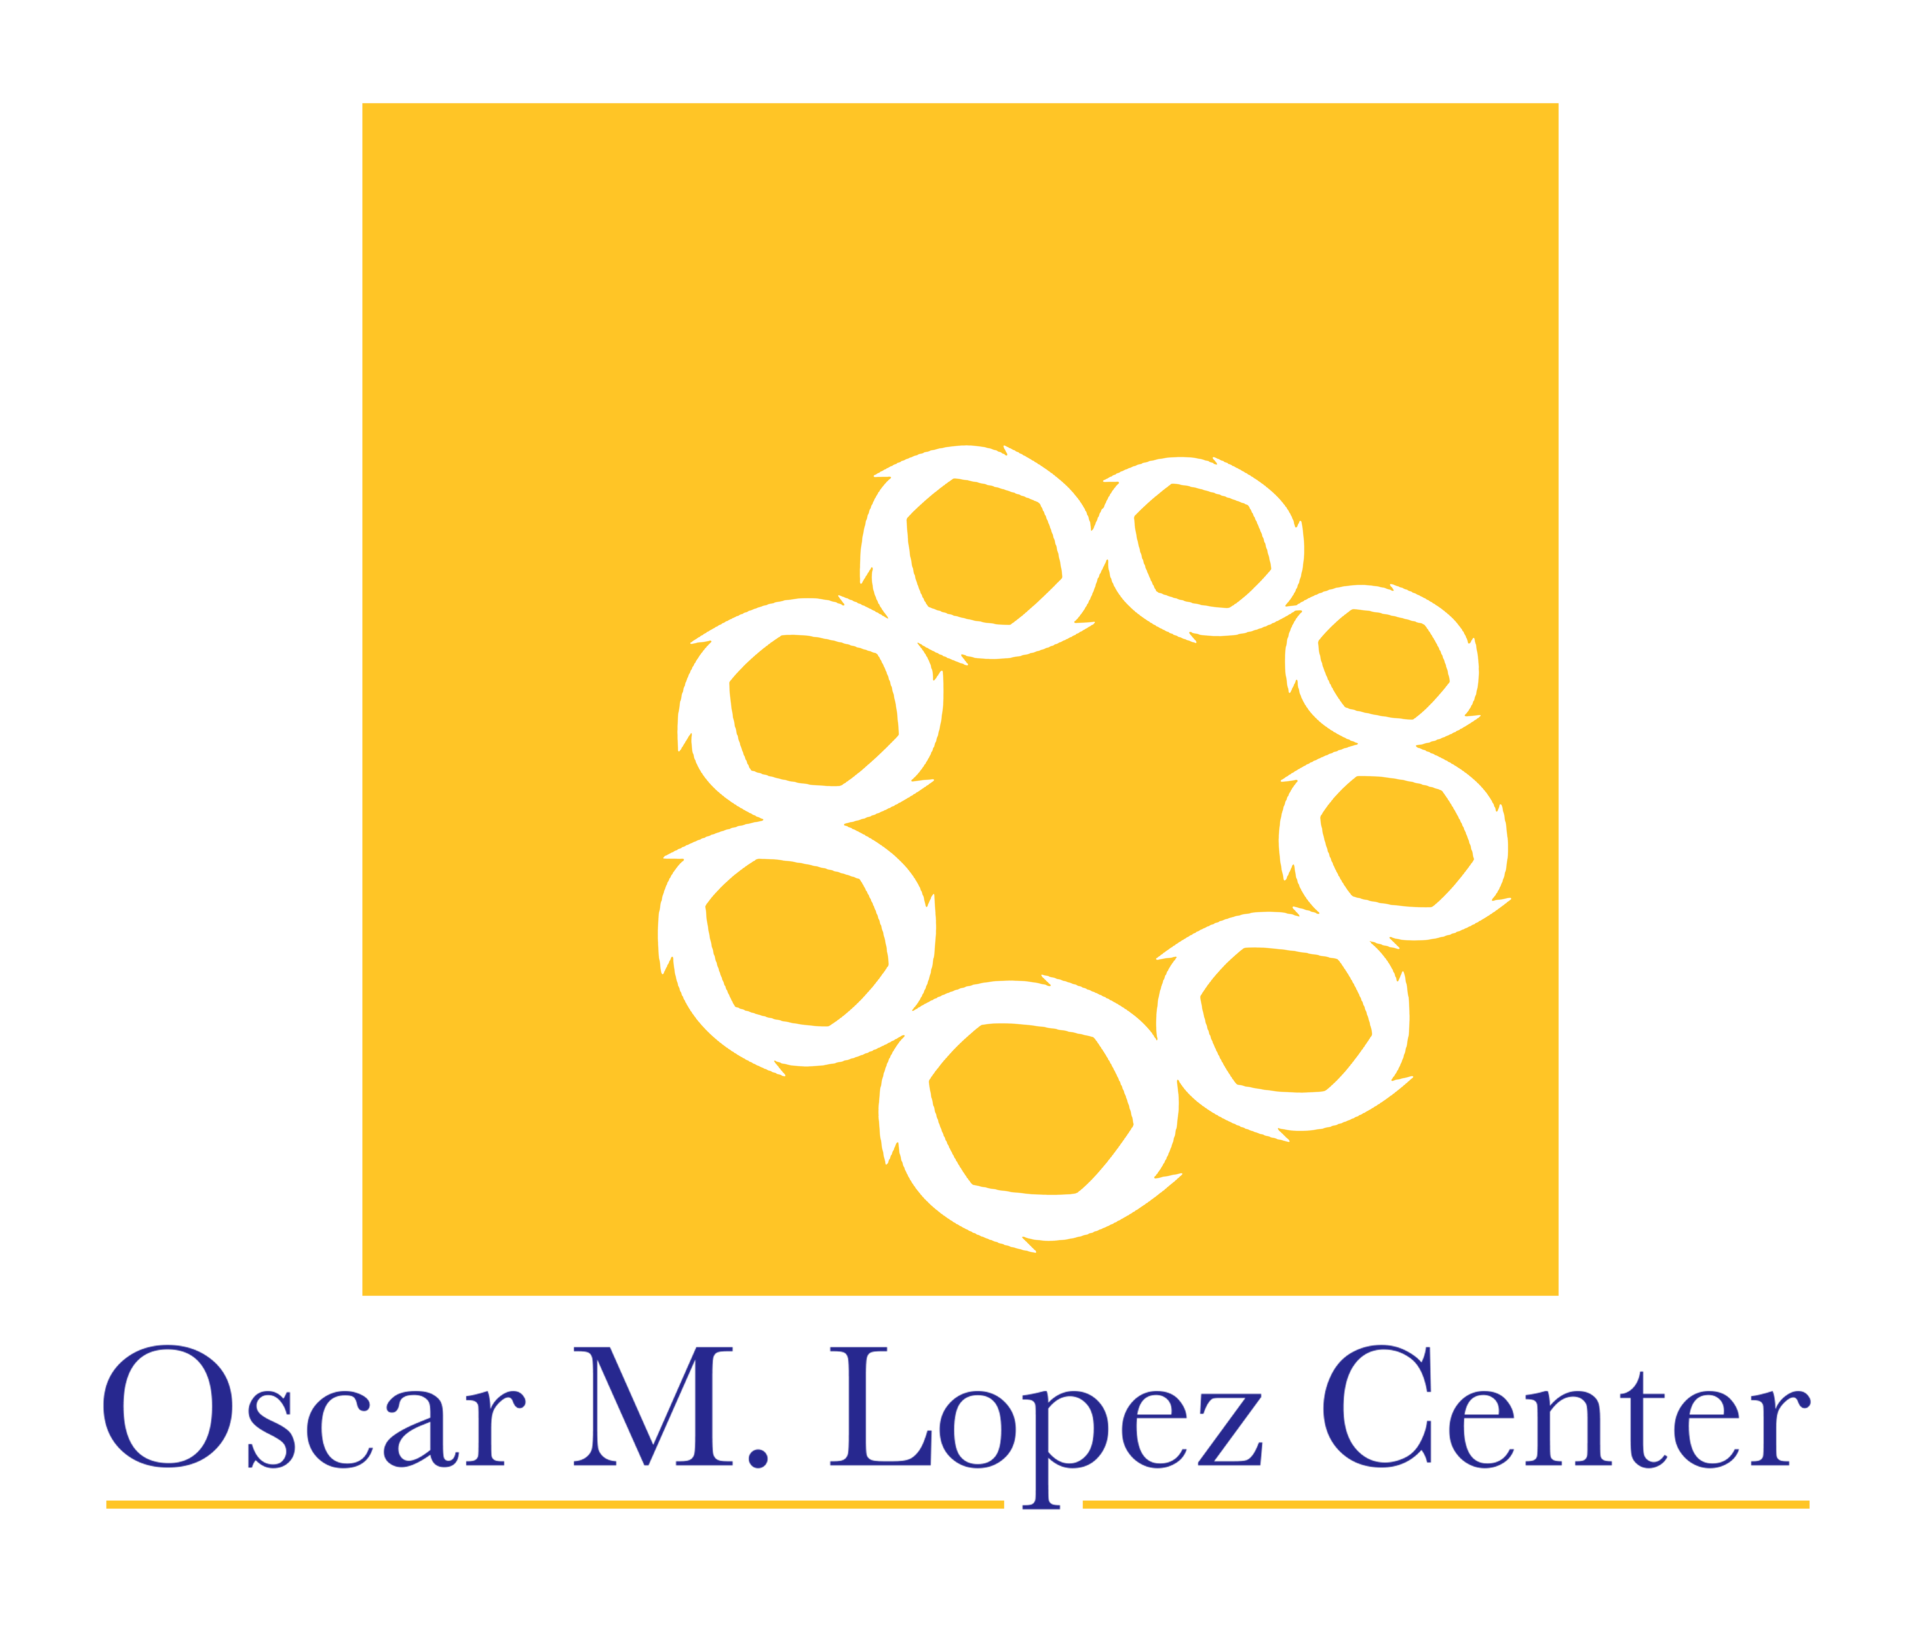 Oscar M. Lopez Center logo